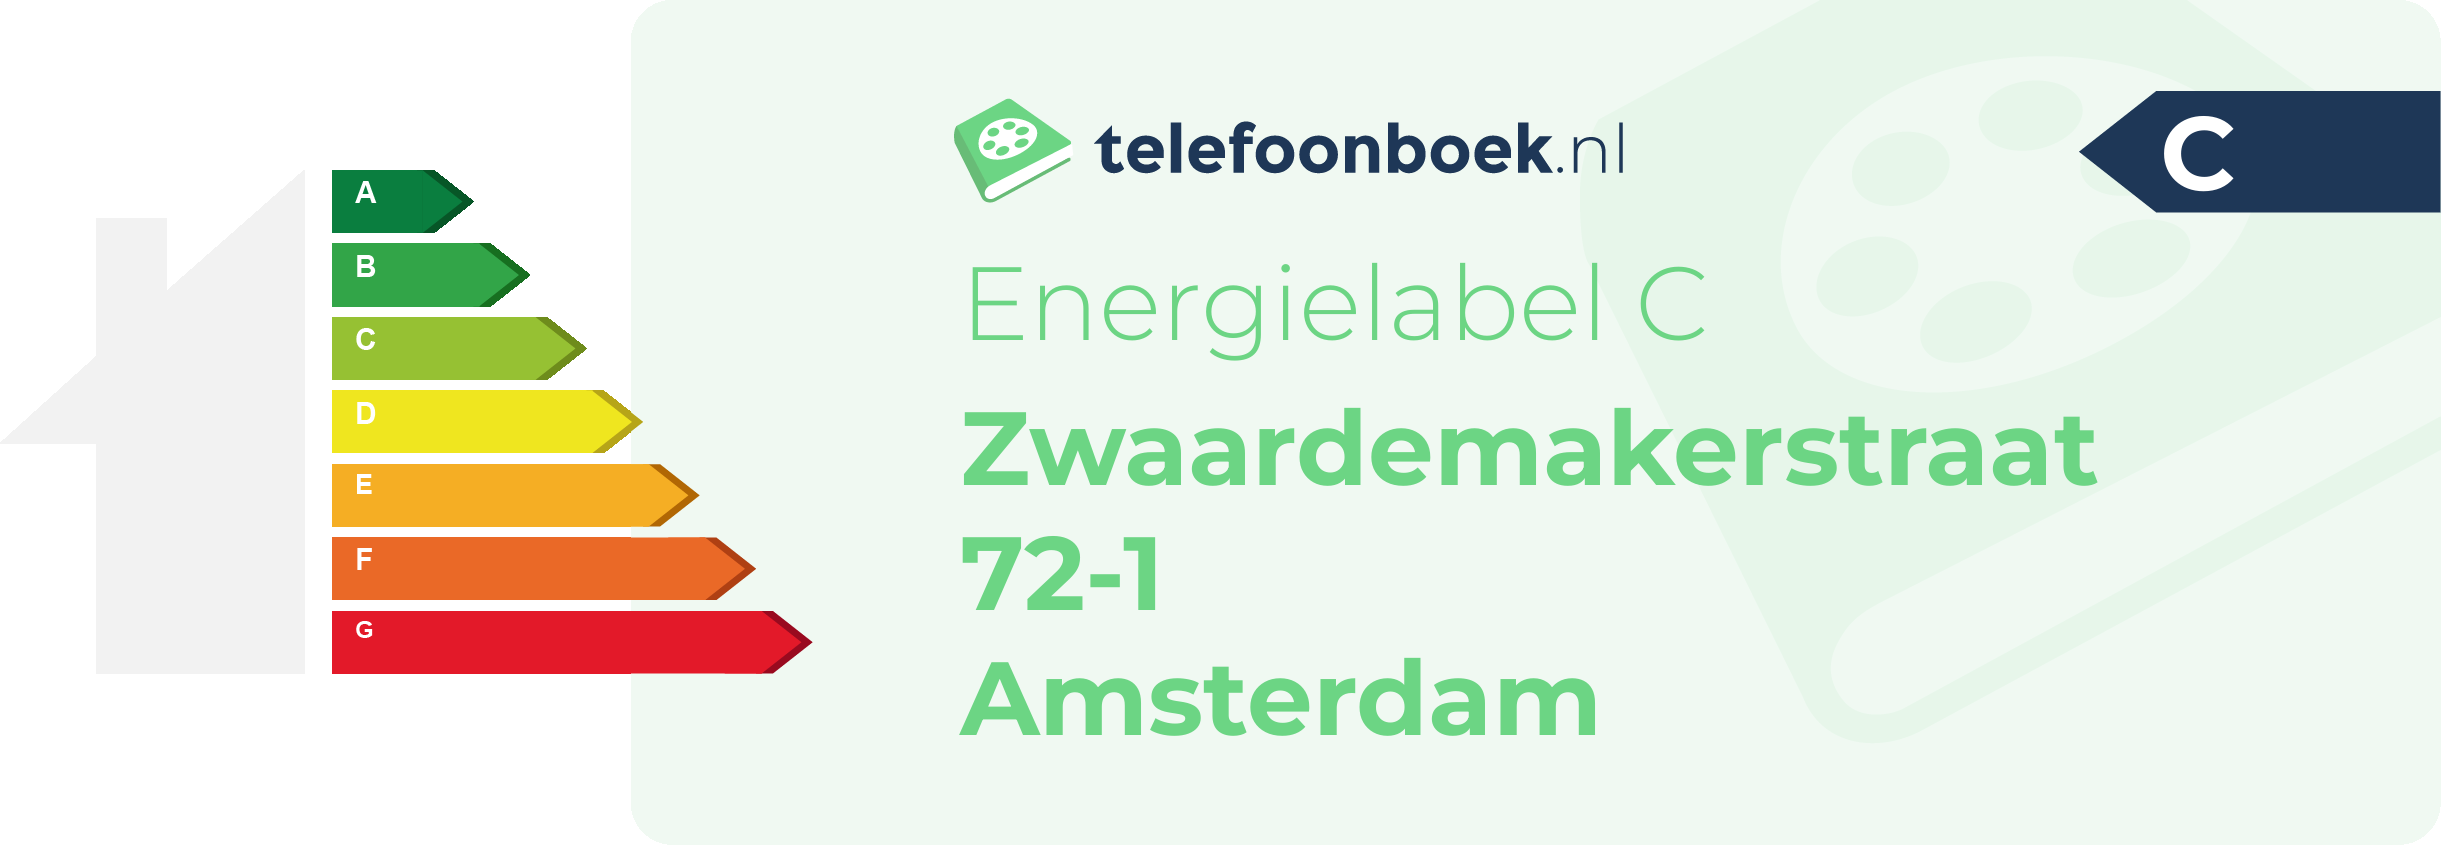 Energielabel Zwaardemakerstraat 72-1 Amsterdam